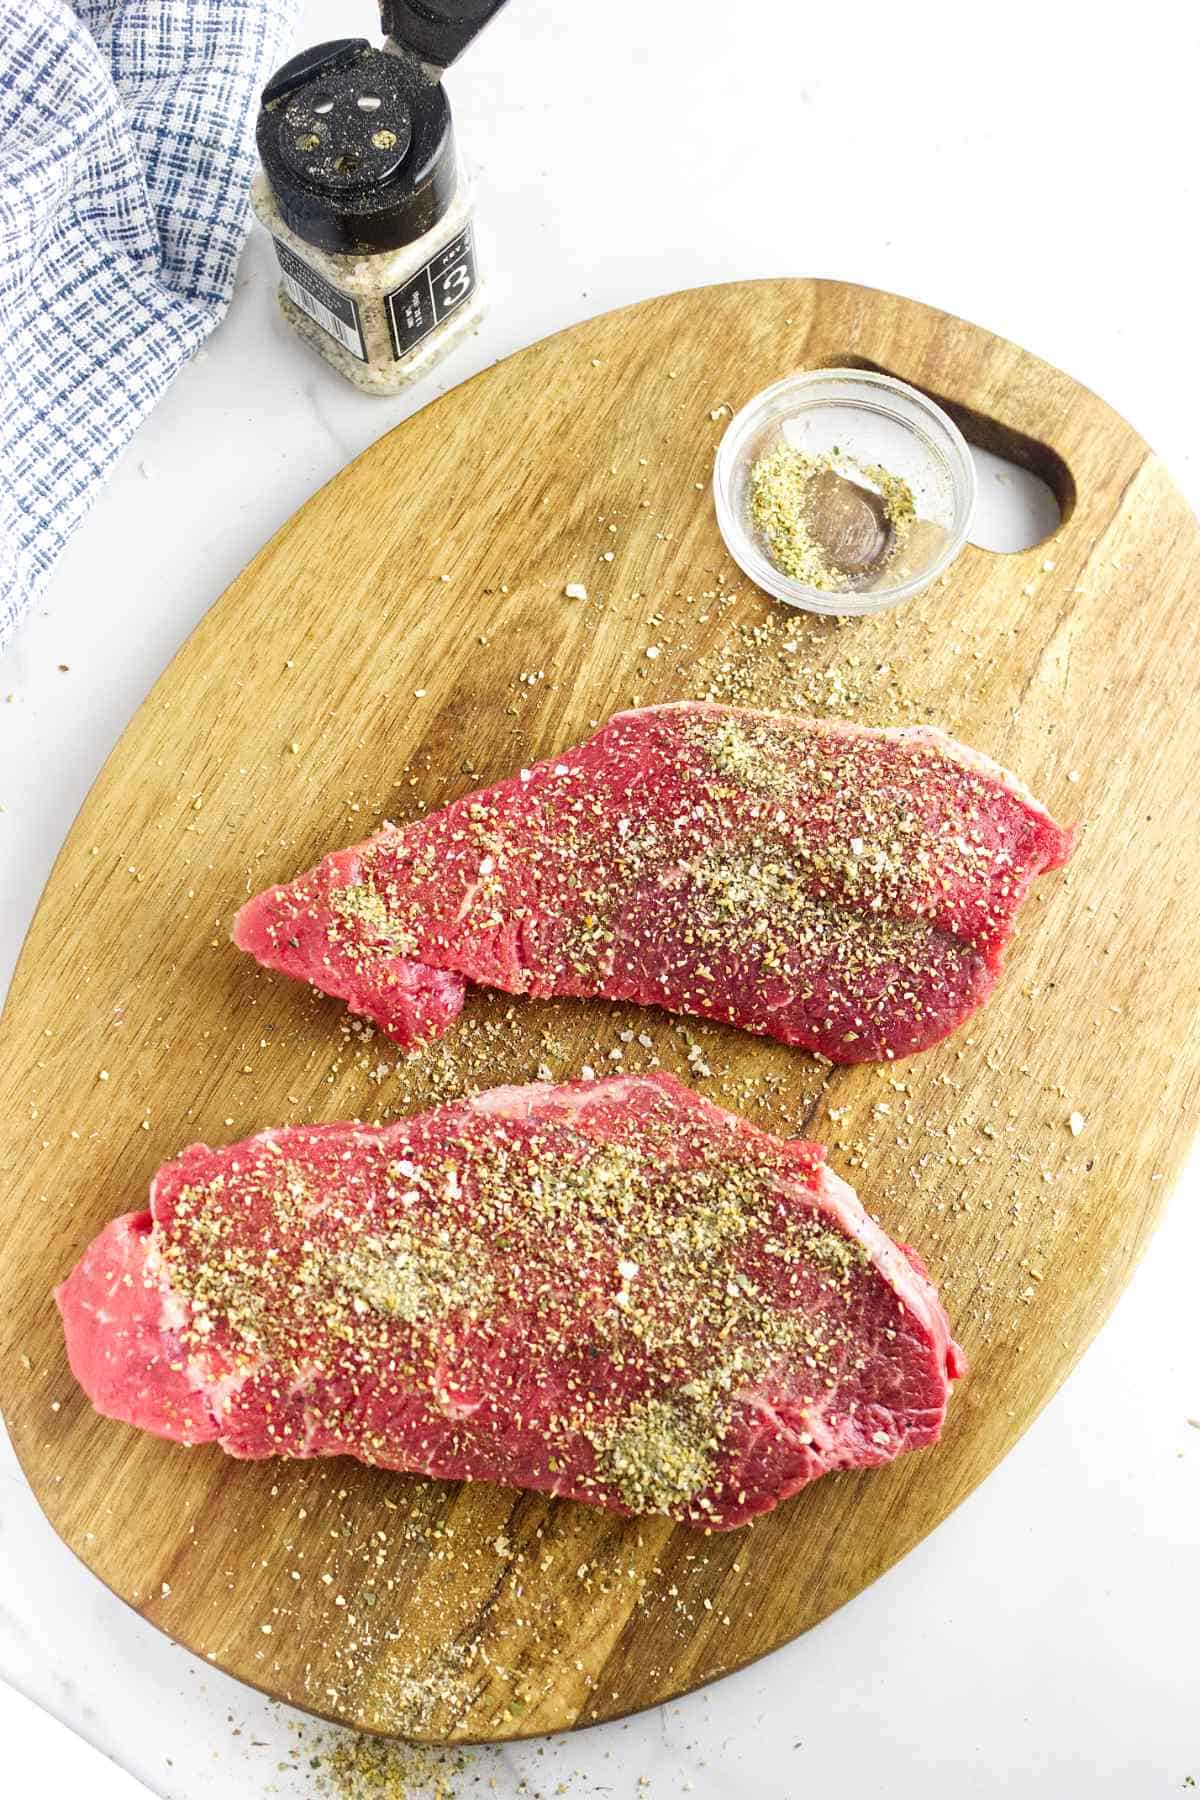 seasoned steaks on a cutting board.